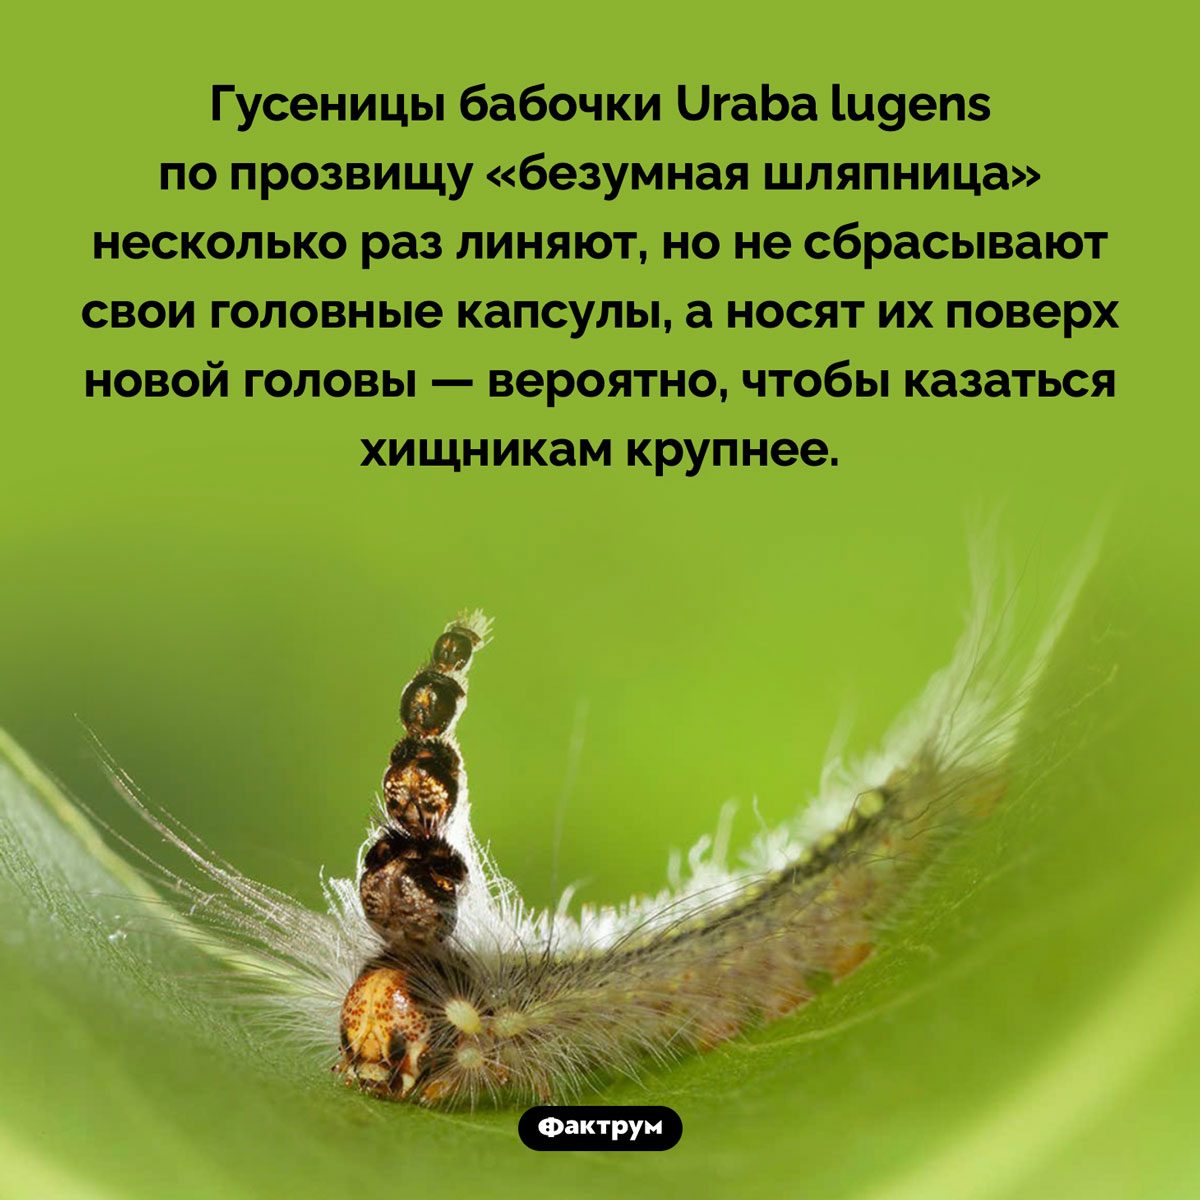 «Безумная шляпница» Uraba lugens. Гусеницы бабочки Uraba lugens по прозвищу «безумная шляпница» несколько раз линяют, но не сбрасывают свои головные капсулы, а носят их поверх новой головы — вероятно, чтобы казаться хищникам крупнее.